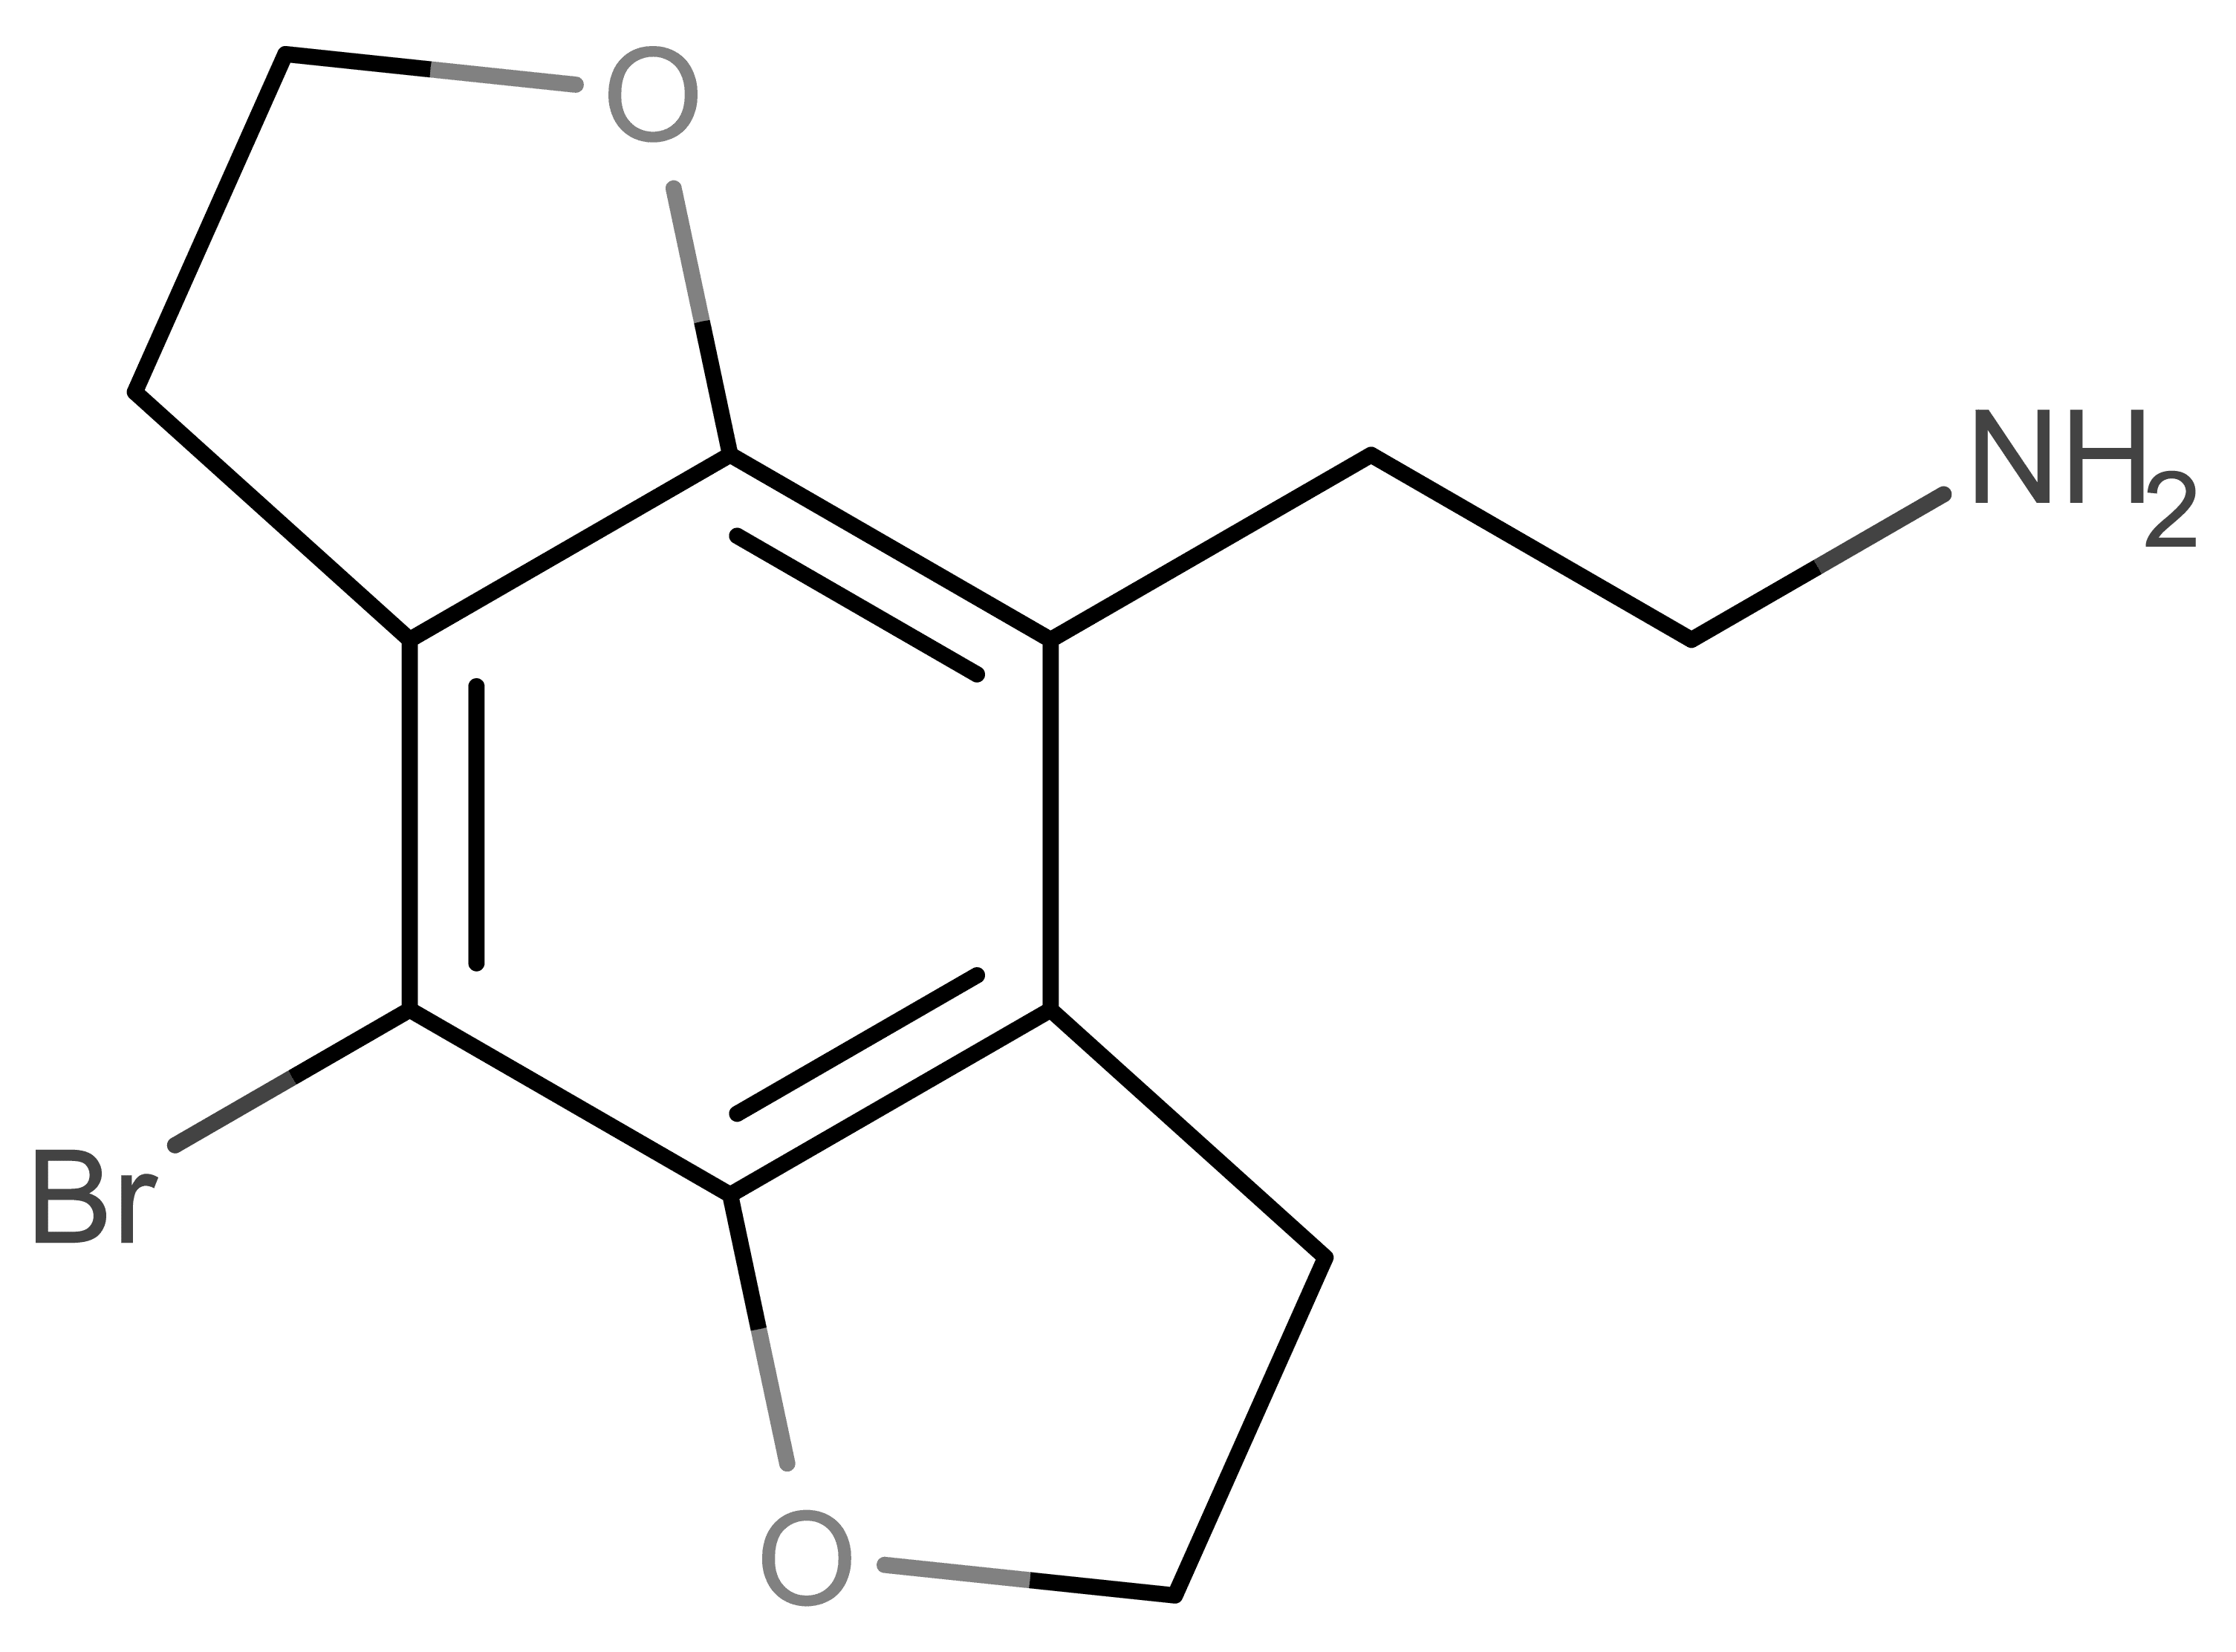 2C-B-FLY molecular scheme